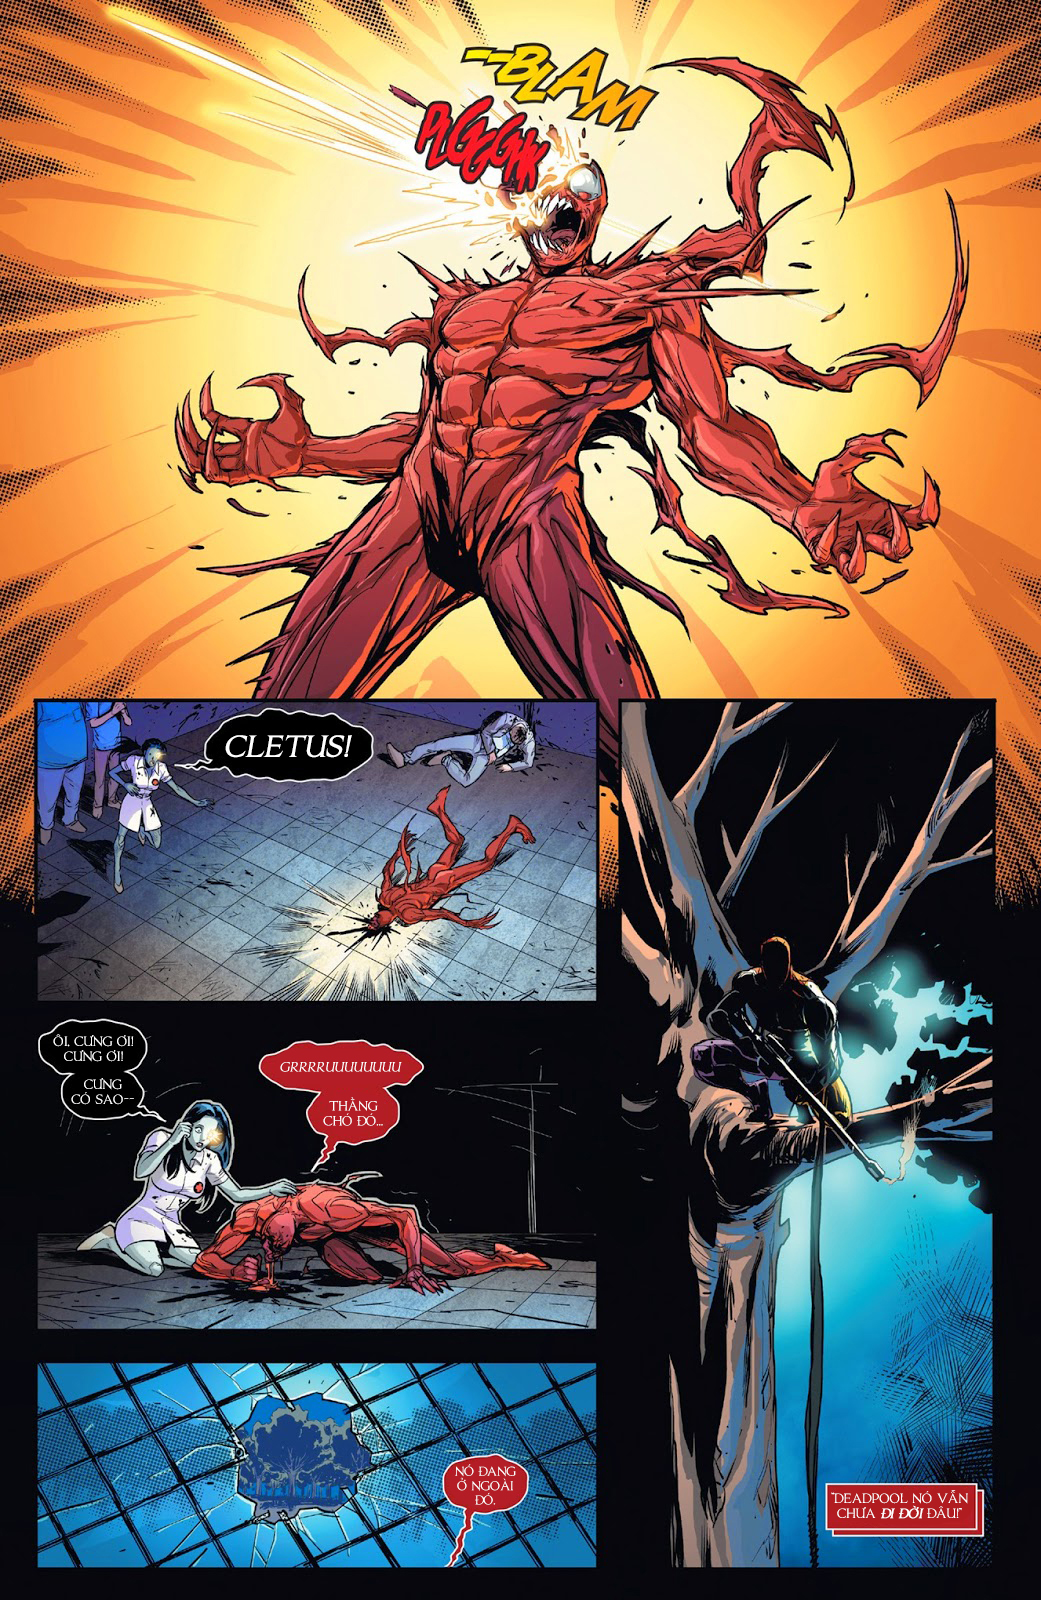 Deadpool Vs Carnage